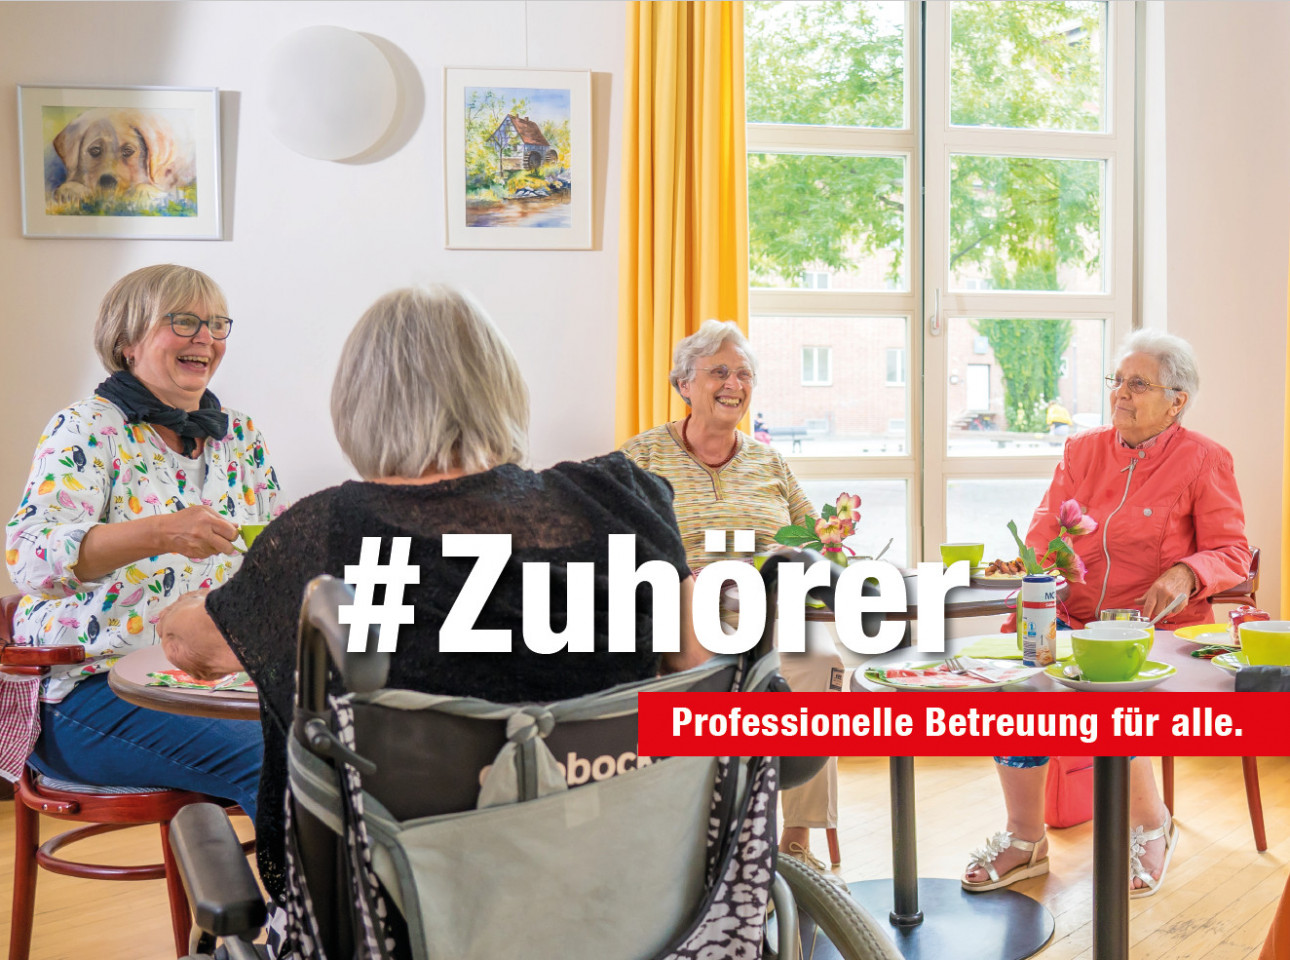 Kampagne-Senioren-Zuhoerer-v2.jpg